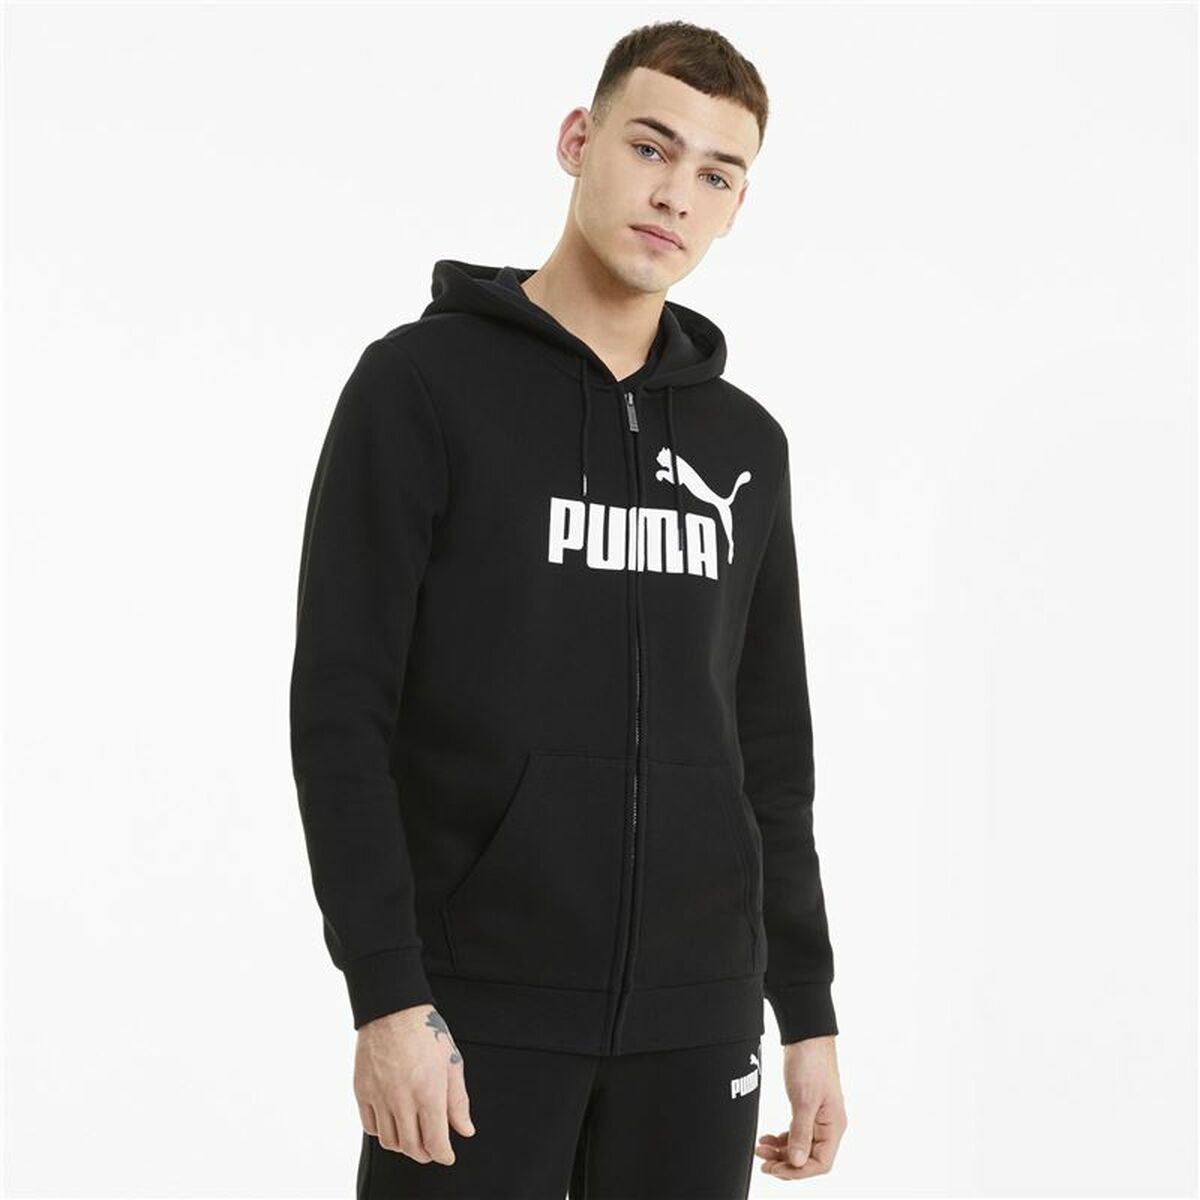 Kaufe Herren Sweater mit Kapuze Puma Essentials Big Logo Schwarz bei AWK Flagship um € 61.00